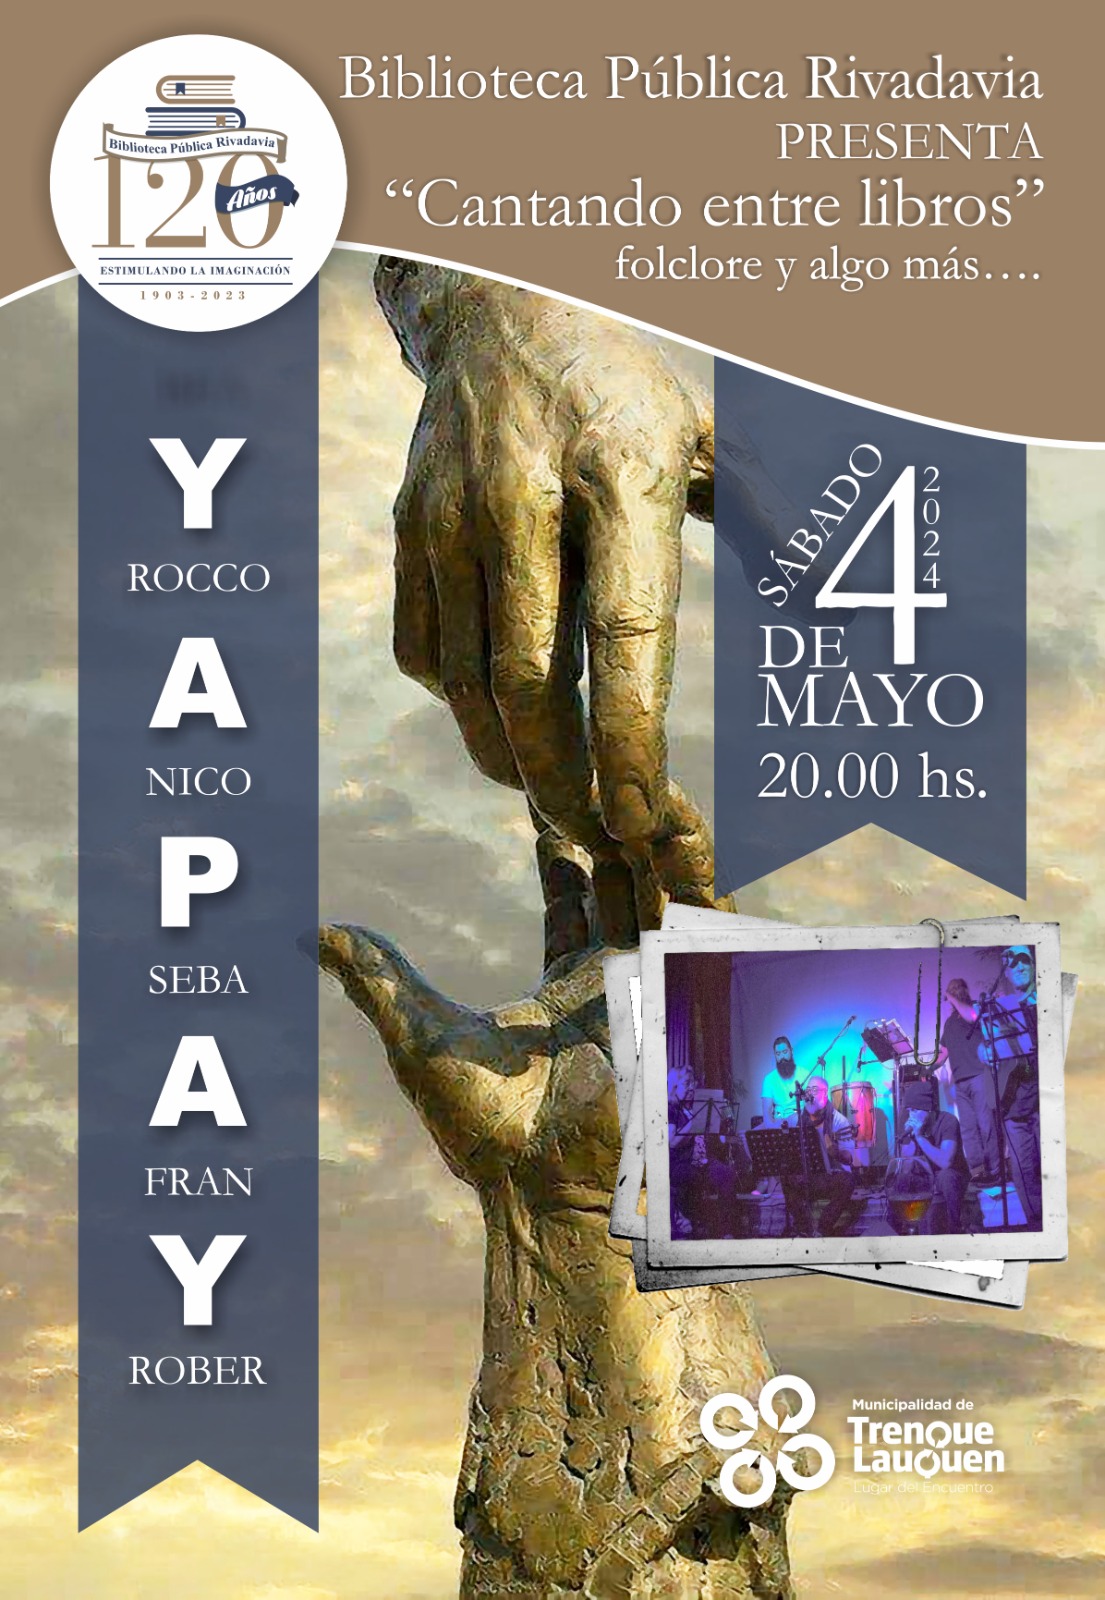 “Yapay” abre la temporada de espectáculos en la Biblioteca Rivadavia